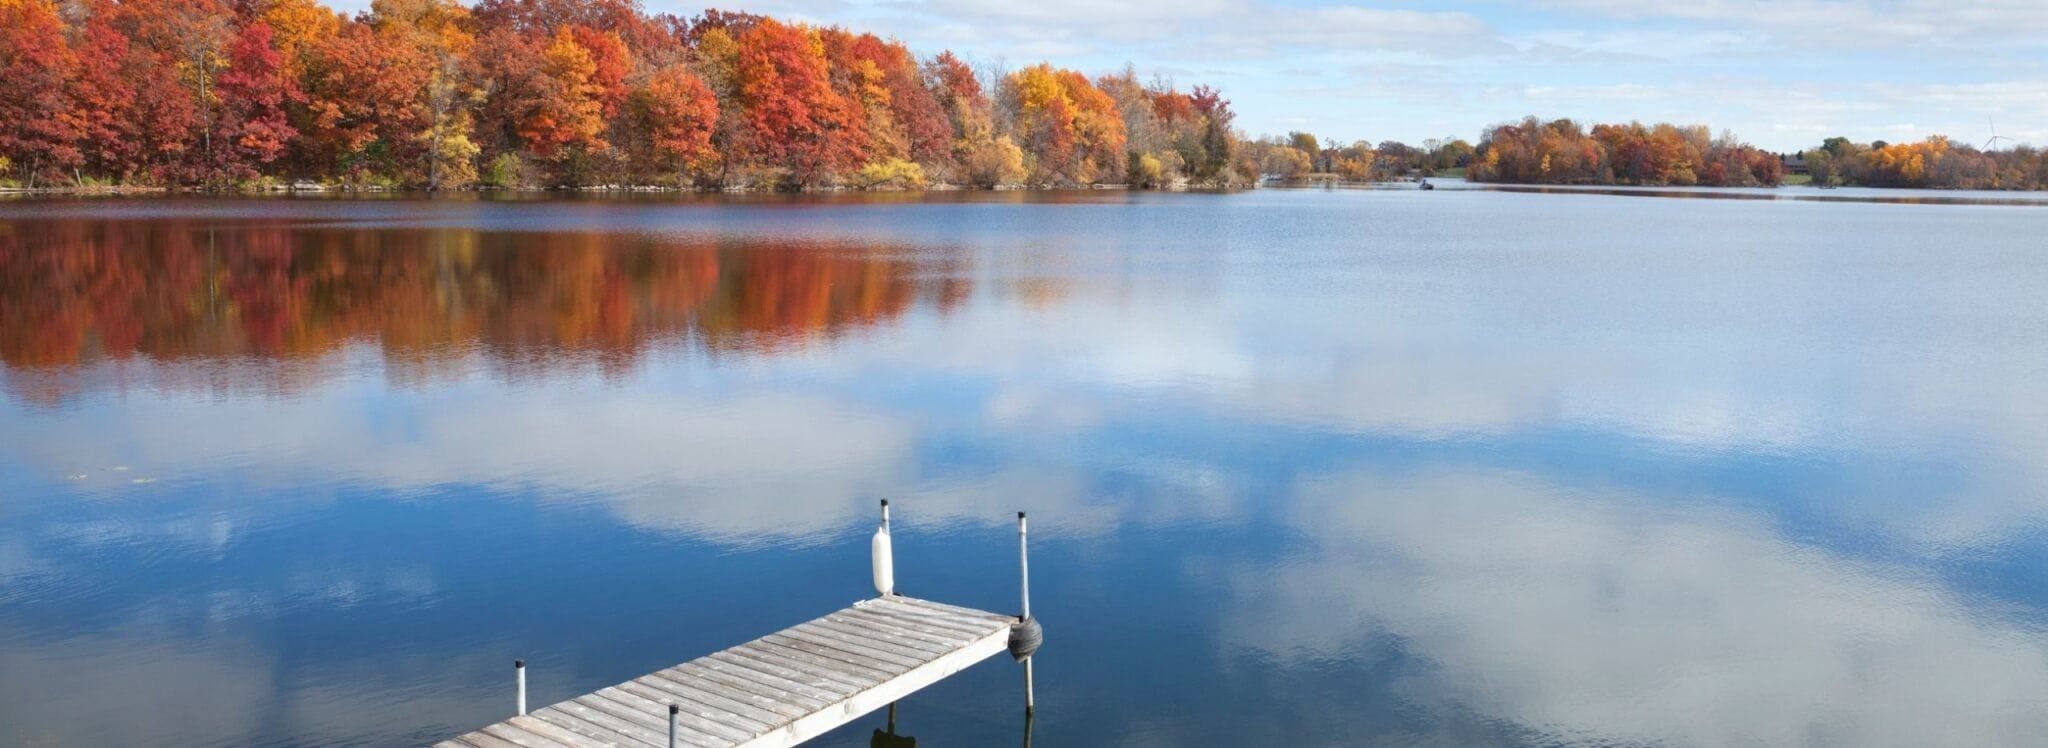 Minnesota lake in the fall season